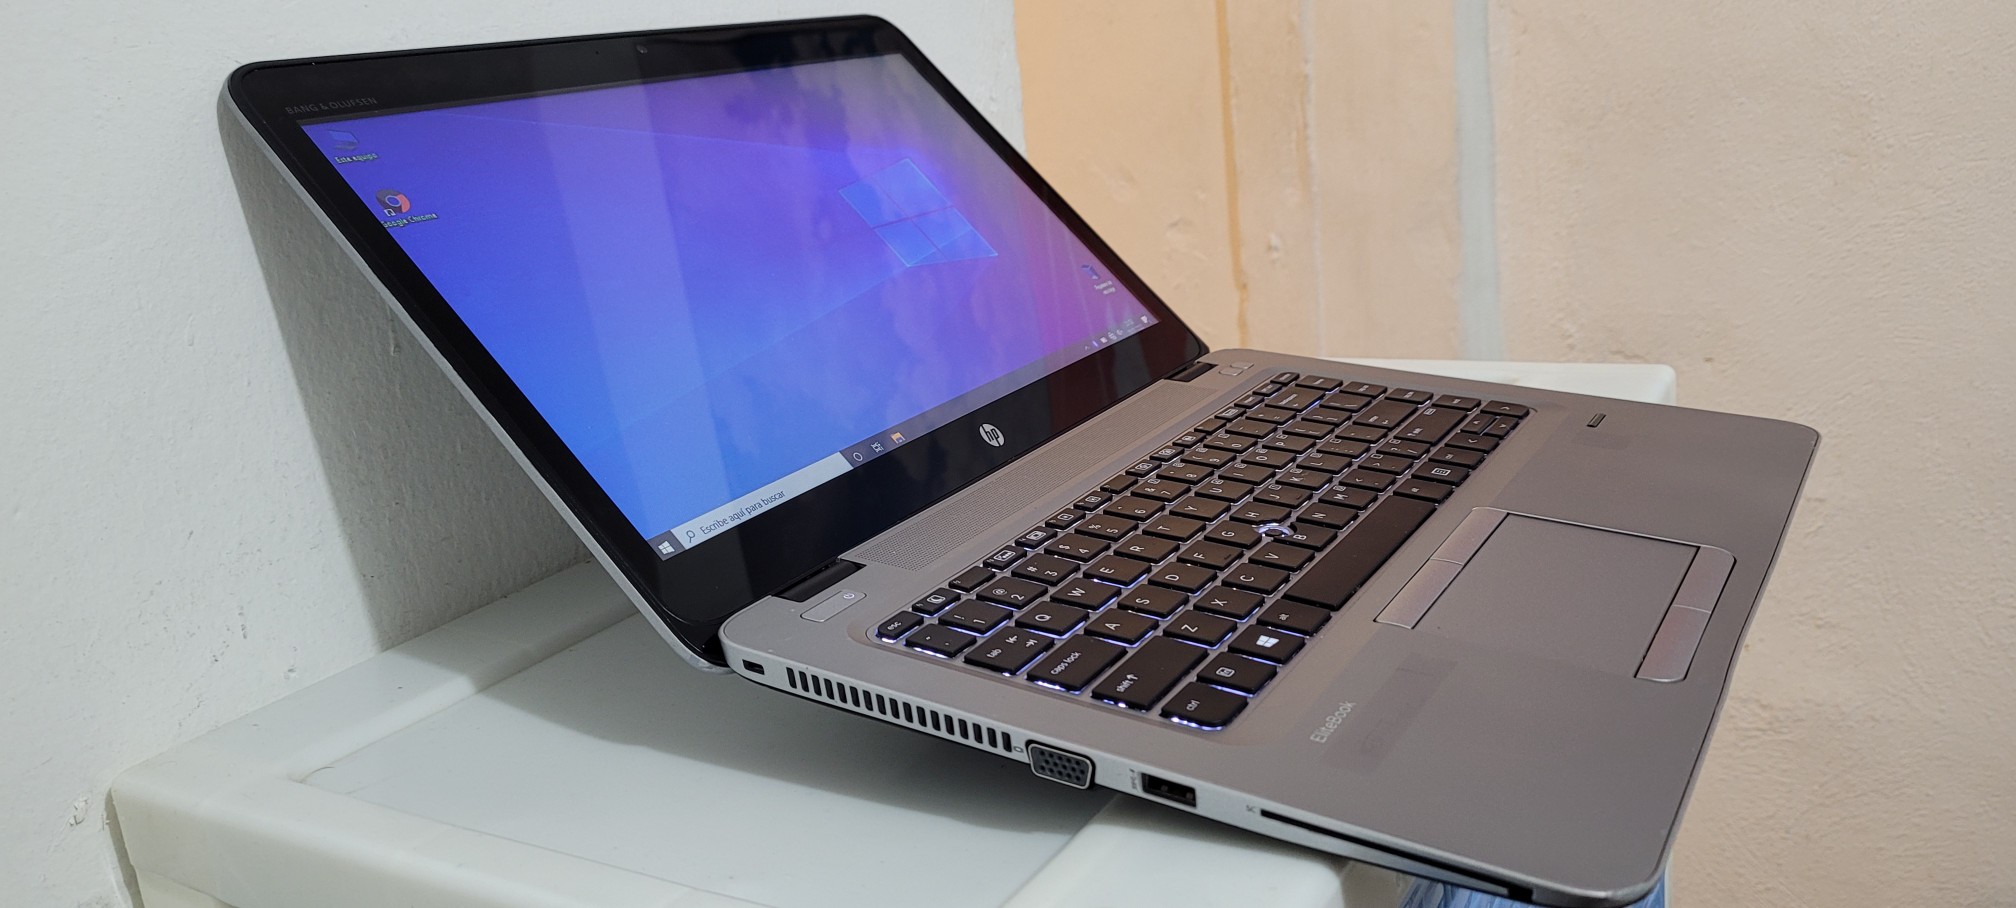 computadoras y laptops - Laptop hp Pantalla Touch Core i5 7ma Gen Ram 8gb ddr4 Disco 128gb SSD Y 320GB 1